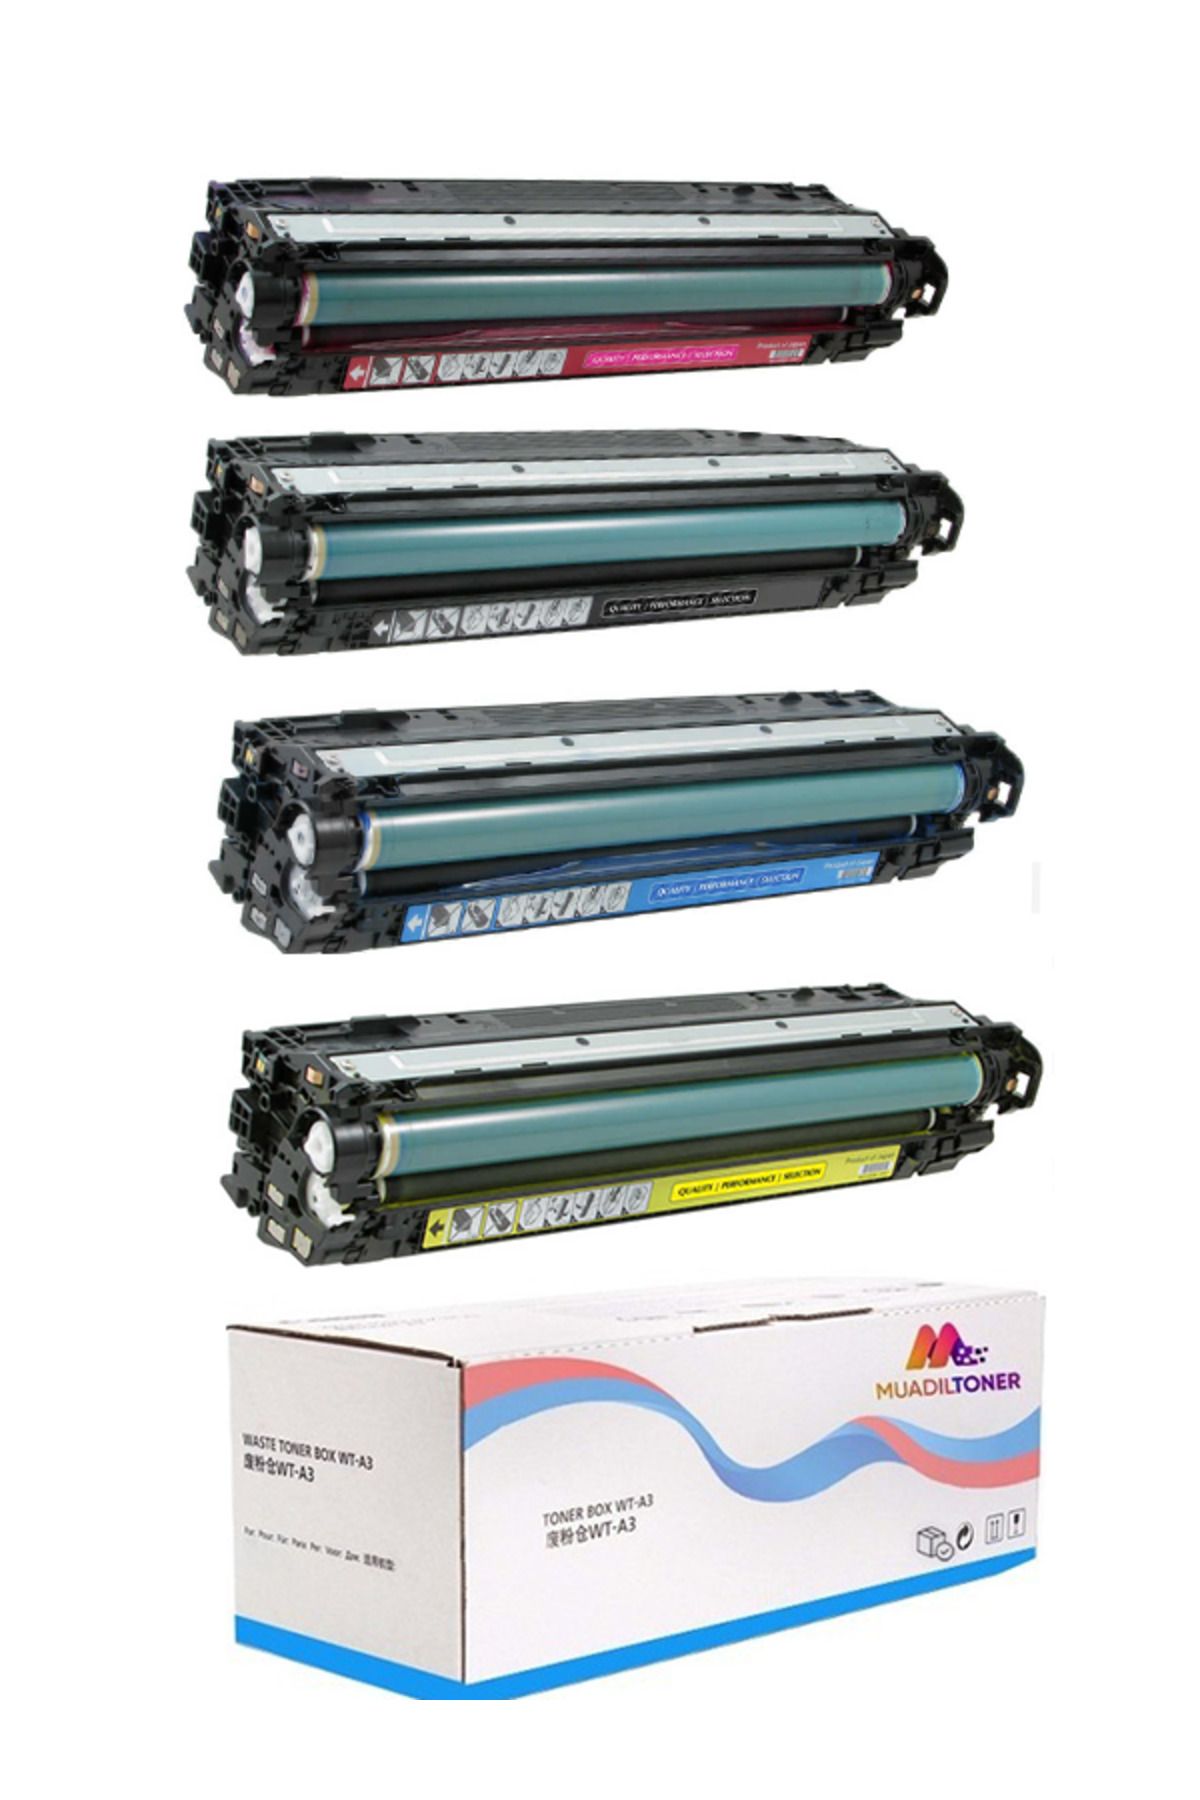 Colorprint Colorful Toner Hp 307A- CE740A- CE741A- CE742A- CE743A 6.000 Sayfa CP5225- CP5225dn- CP5225n